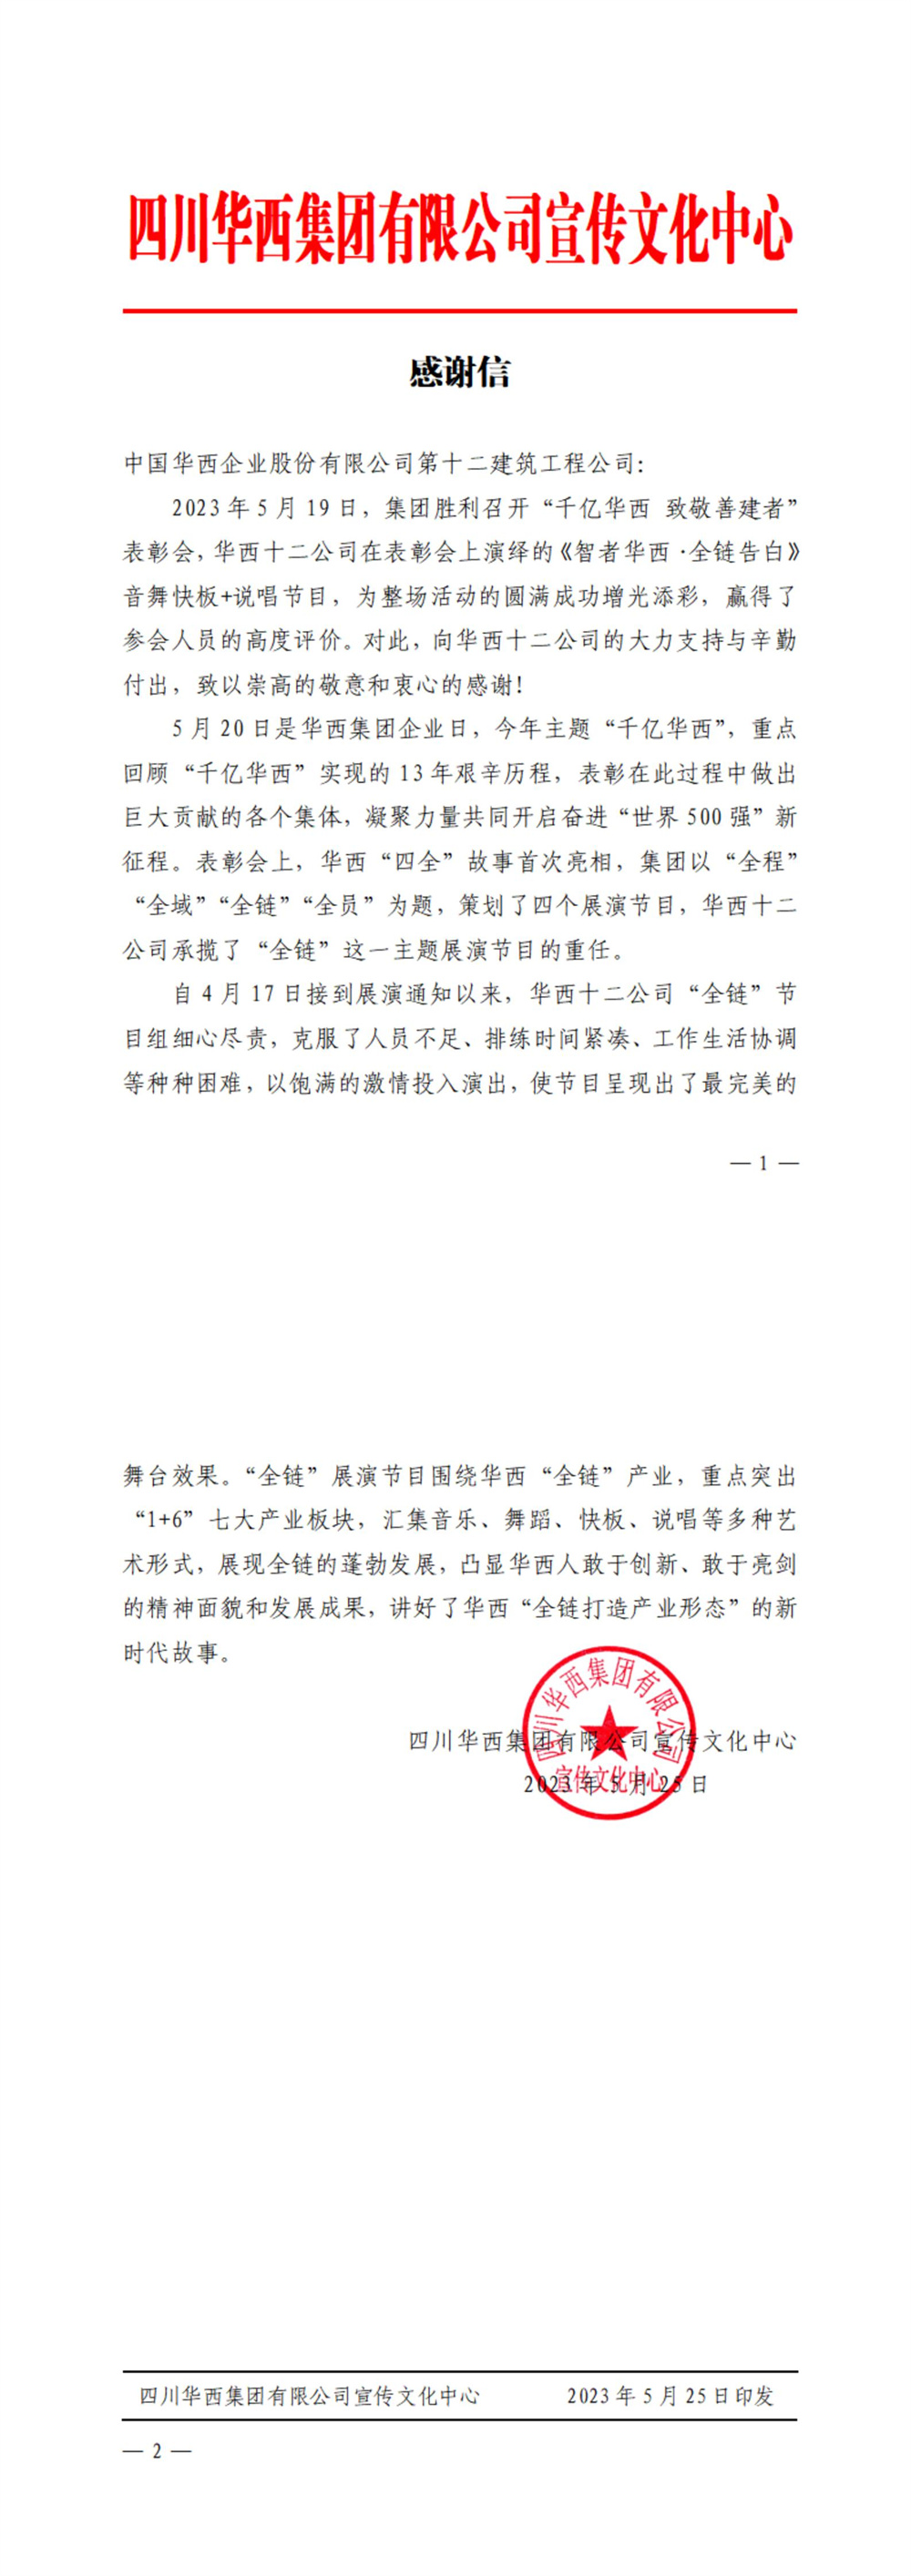 华西十二公司收到集团宣传文化中心发来的感谢信(图1)